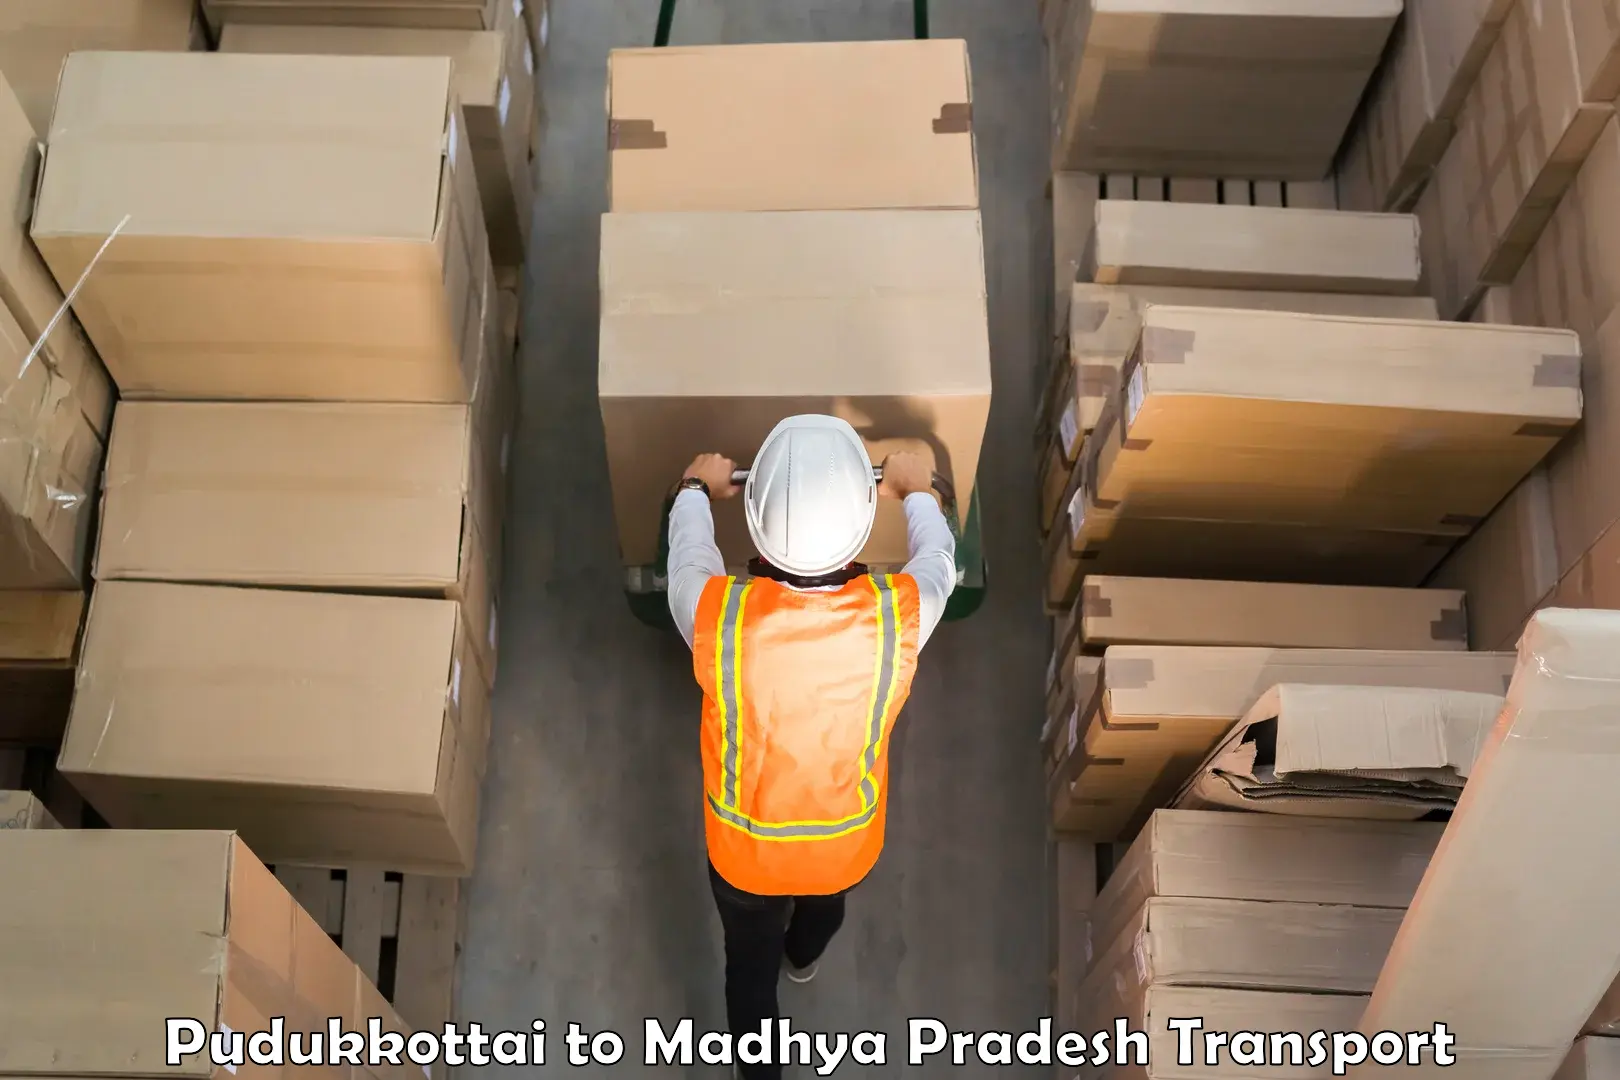 Goods delivery service Pudukkottai to Chitrangi